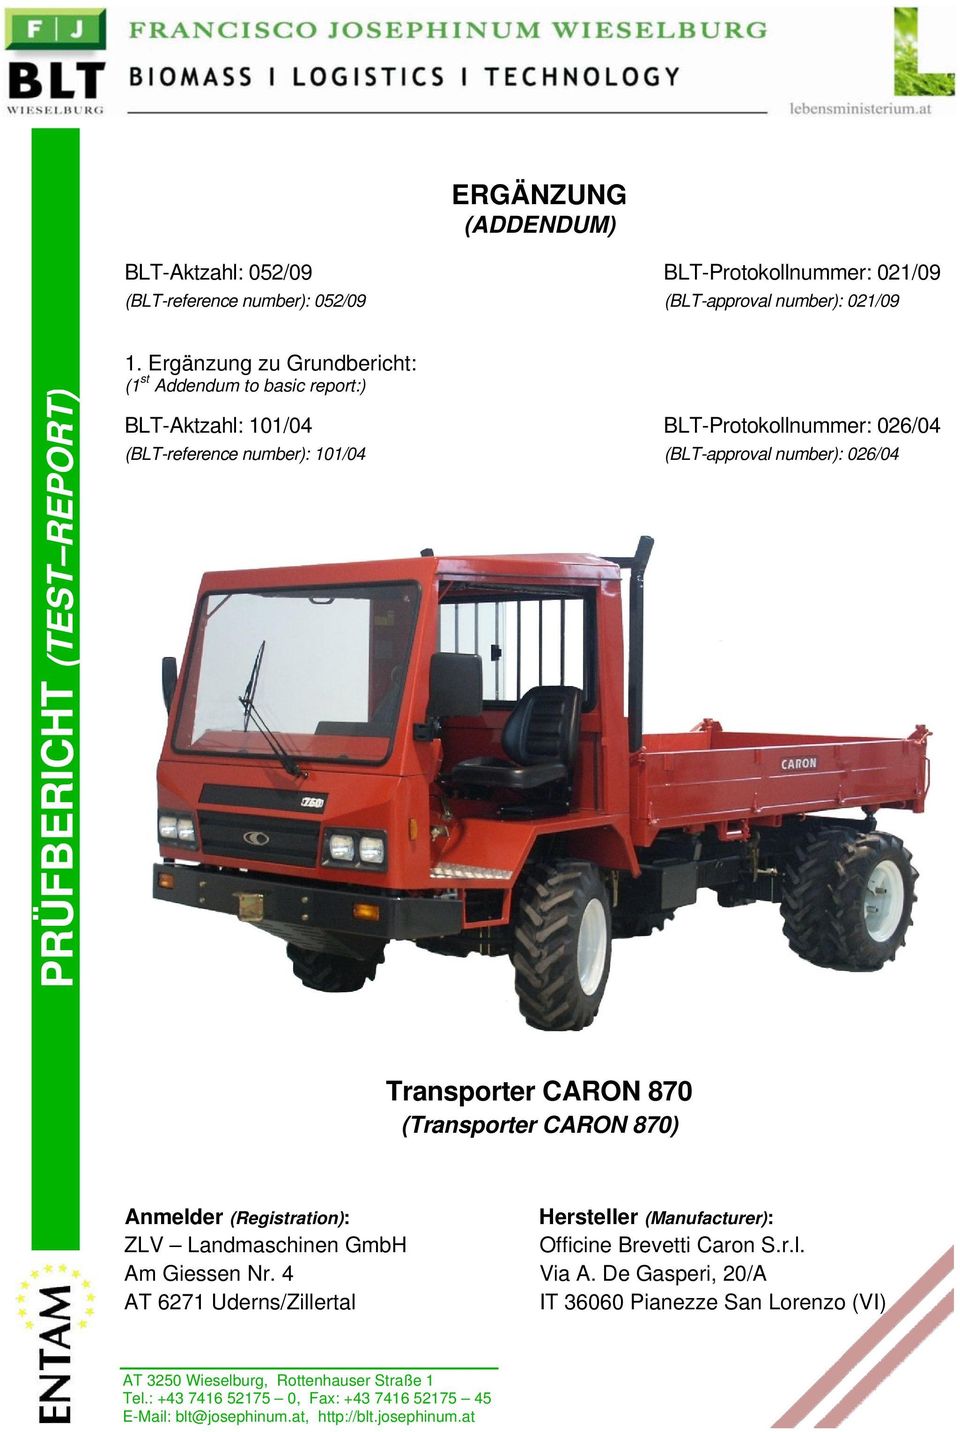 CARON 870 (Transporter CARON 870) Anmelder (Registration): ZLV Landmaschinen GmbH Am Giessen Nr. 4 AT 6271 Uderns/Zillertal Hersteller (Manufacturer): Officine Brevetti Caron S.r.l. Via A.